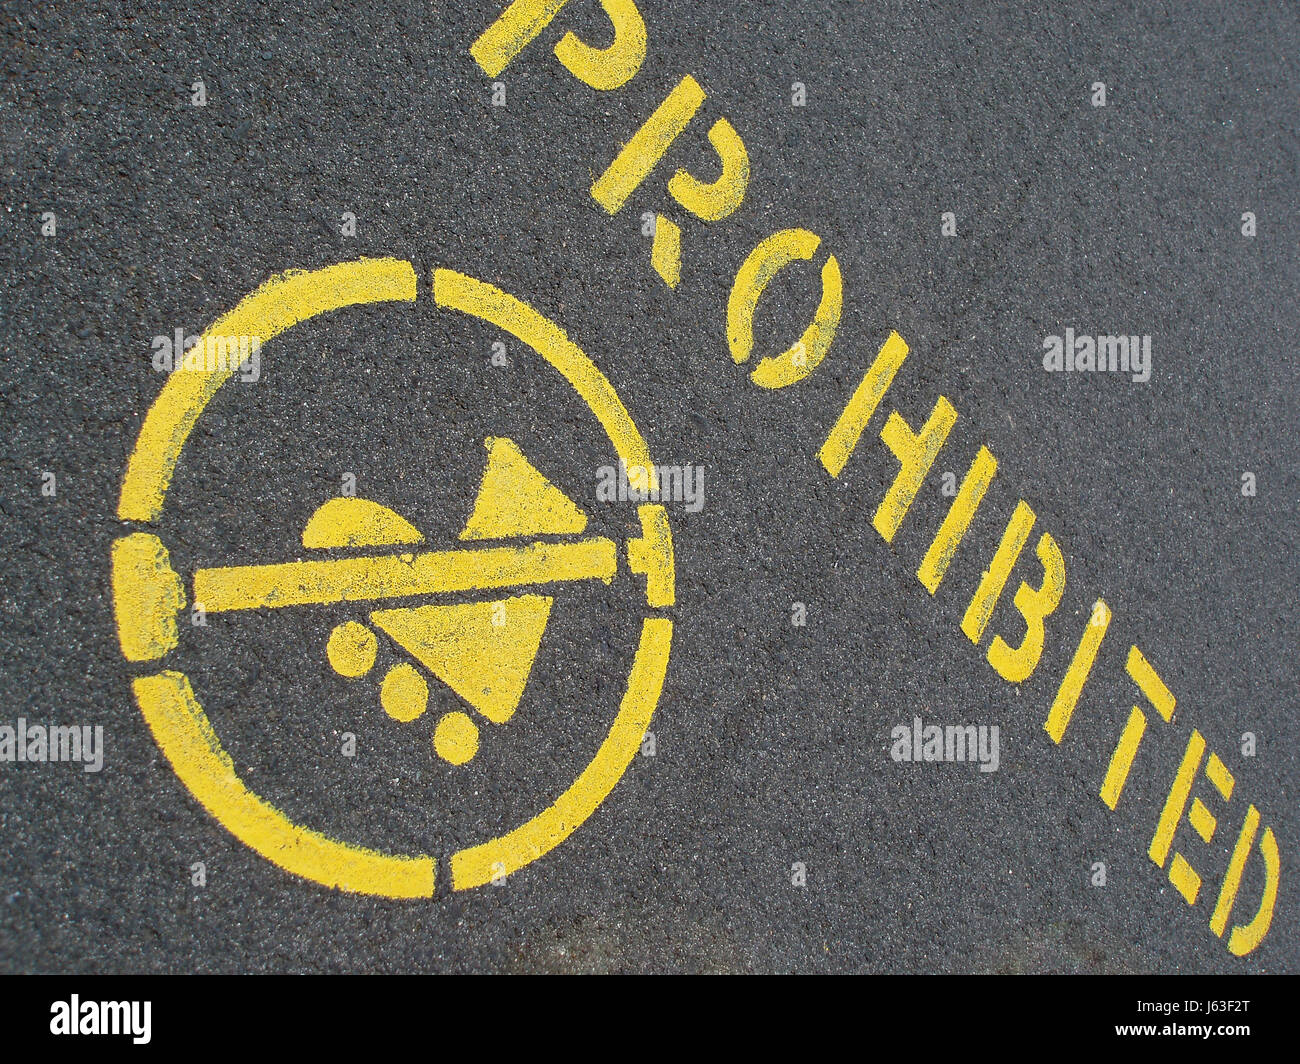 Zeichen Skaten Reihenfolge fahren keine Paint Stop gemalt Haltestellen, die Warnzeichen zu verhindern verbieten Stockfoto